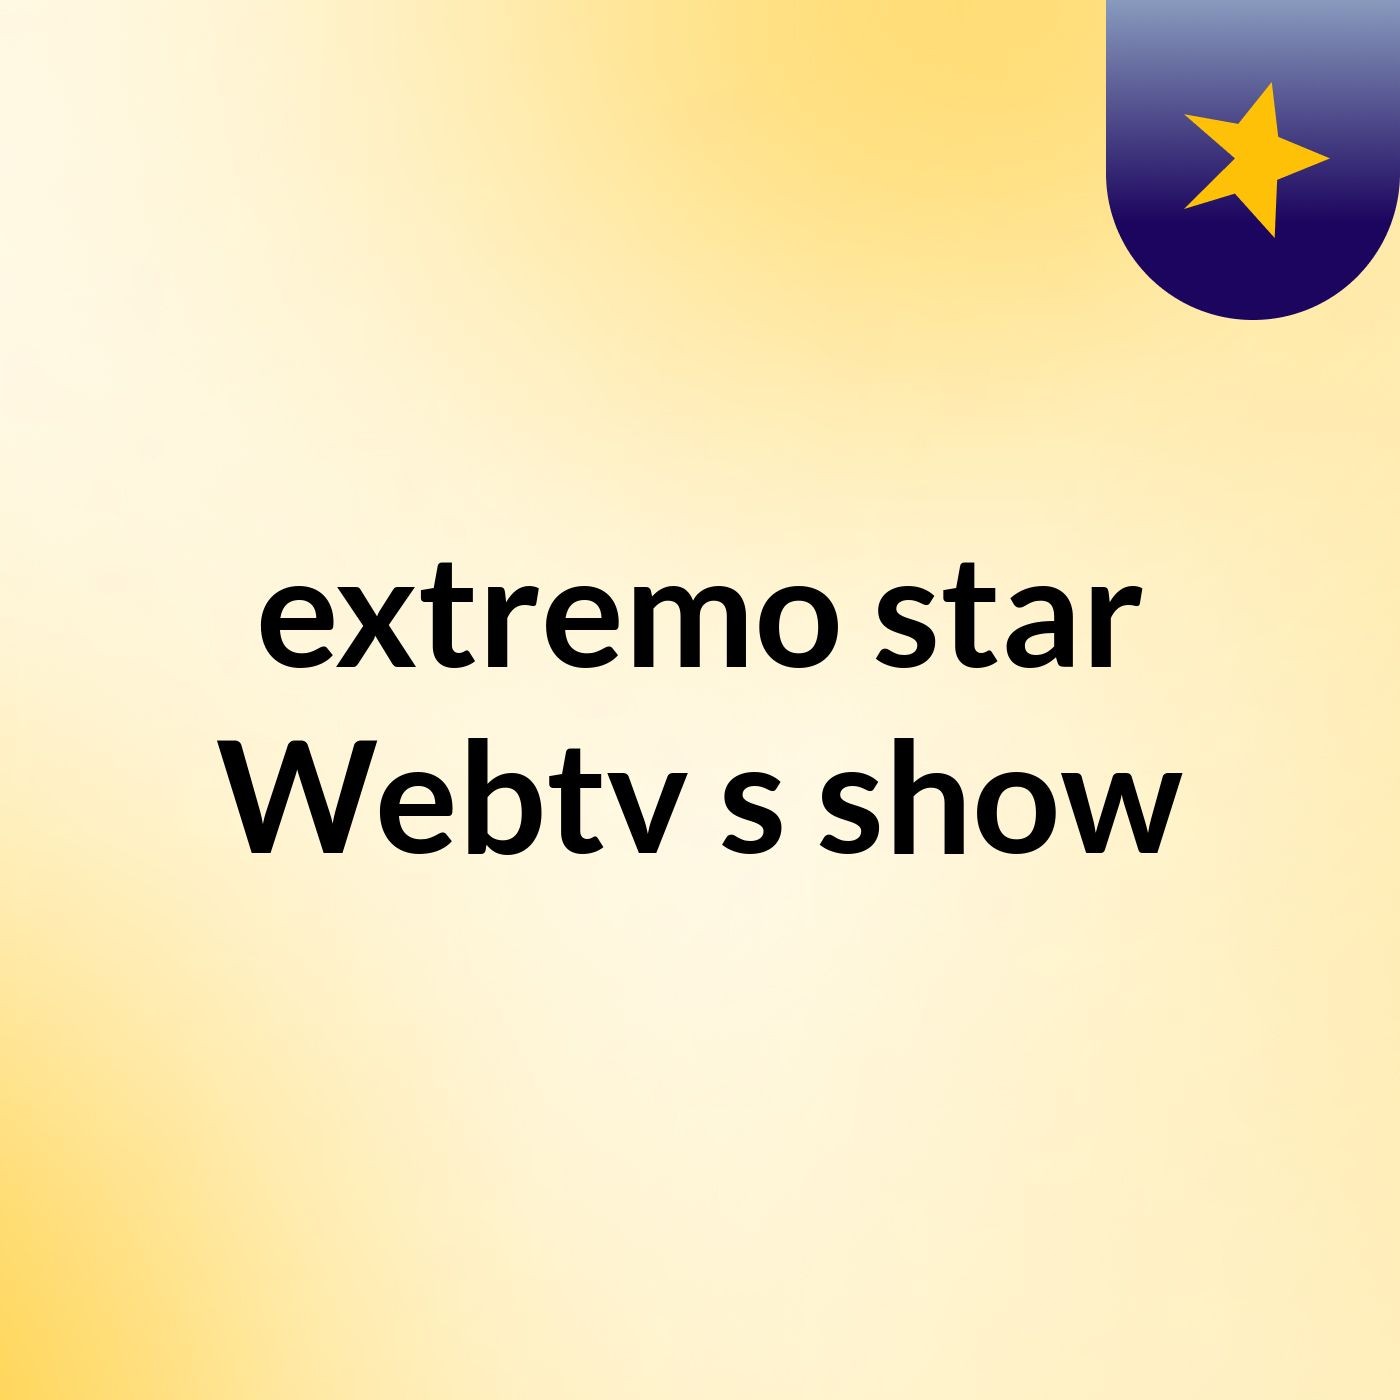 extremo star Webtv's show